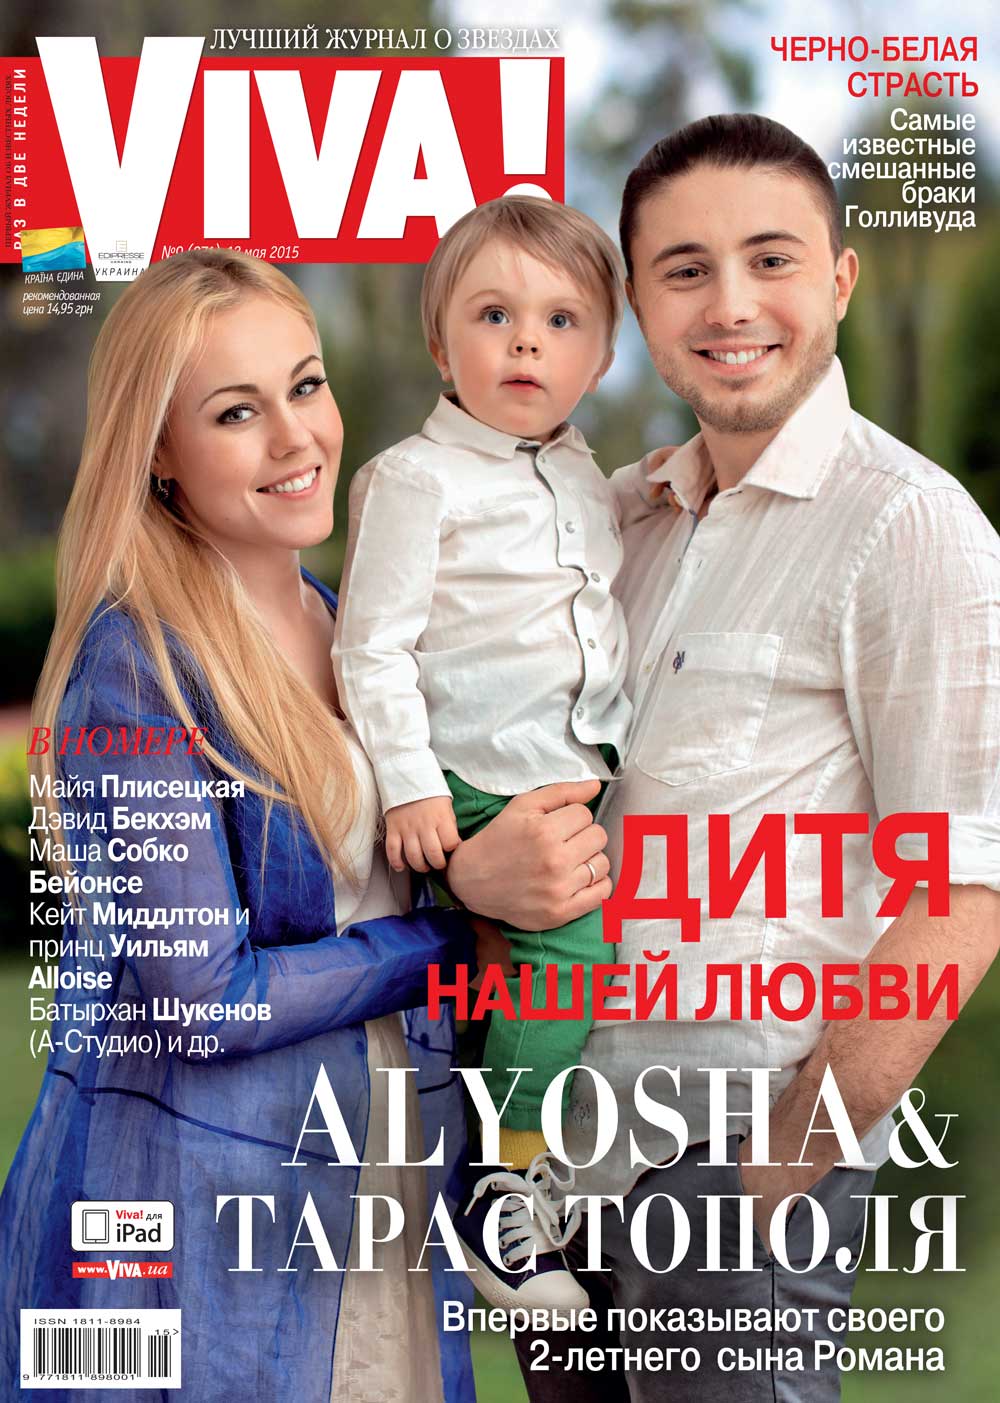 Alyosha и Тарас Тополя впервые показали сына